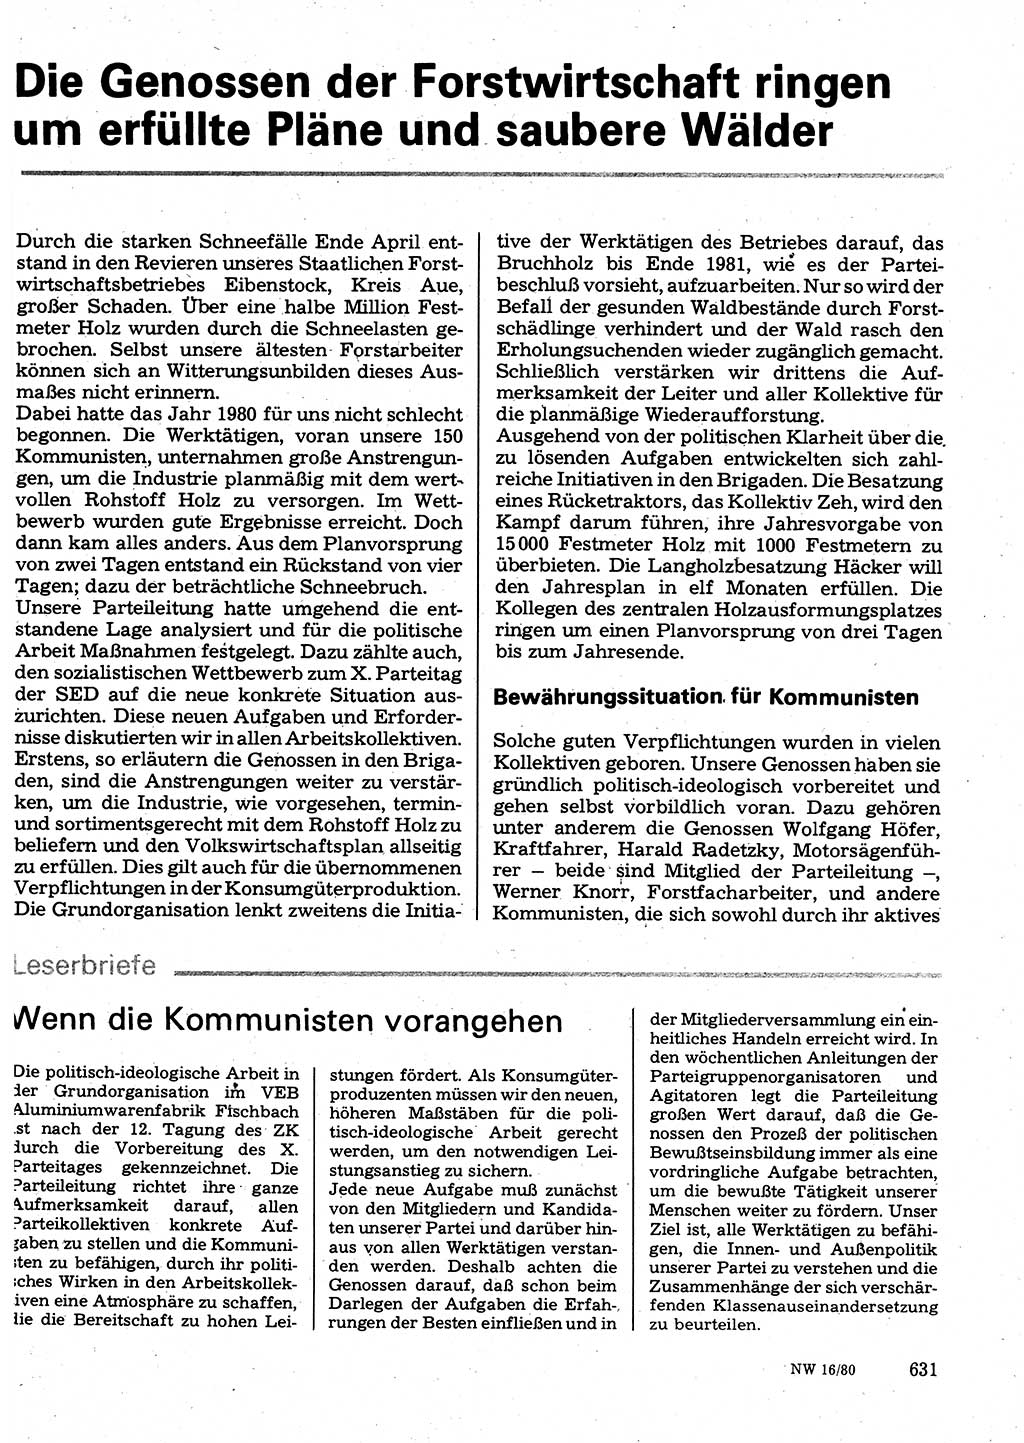 Neuer Weg (NW), Organ des Zentralkomitees (ZK) der SED (Sozialistische Einheitspartei Deutschlands) für Fragen des Parteilebens, 35. Jahrgang [Deutsche Demokratische Republik (DDR)] 1980, Seite 631 (NW ZK SED DDR 1980, S. 631)